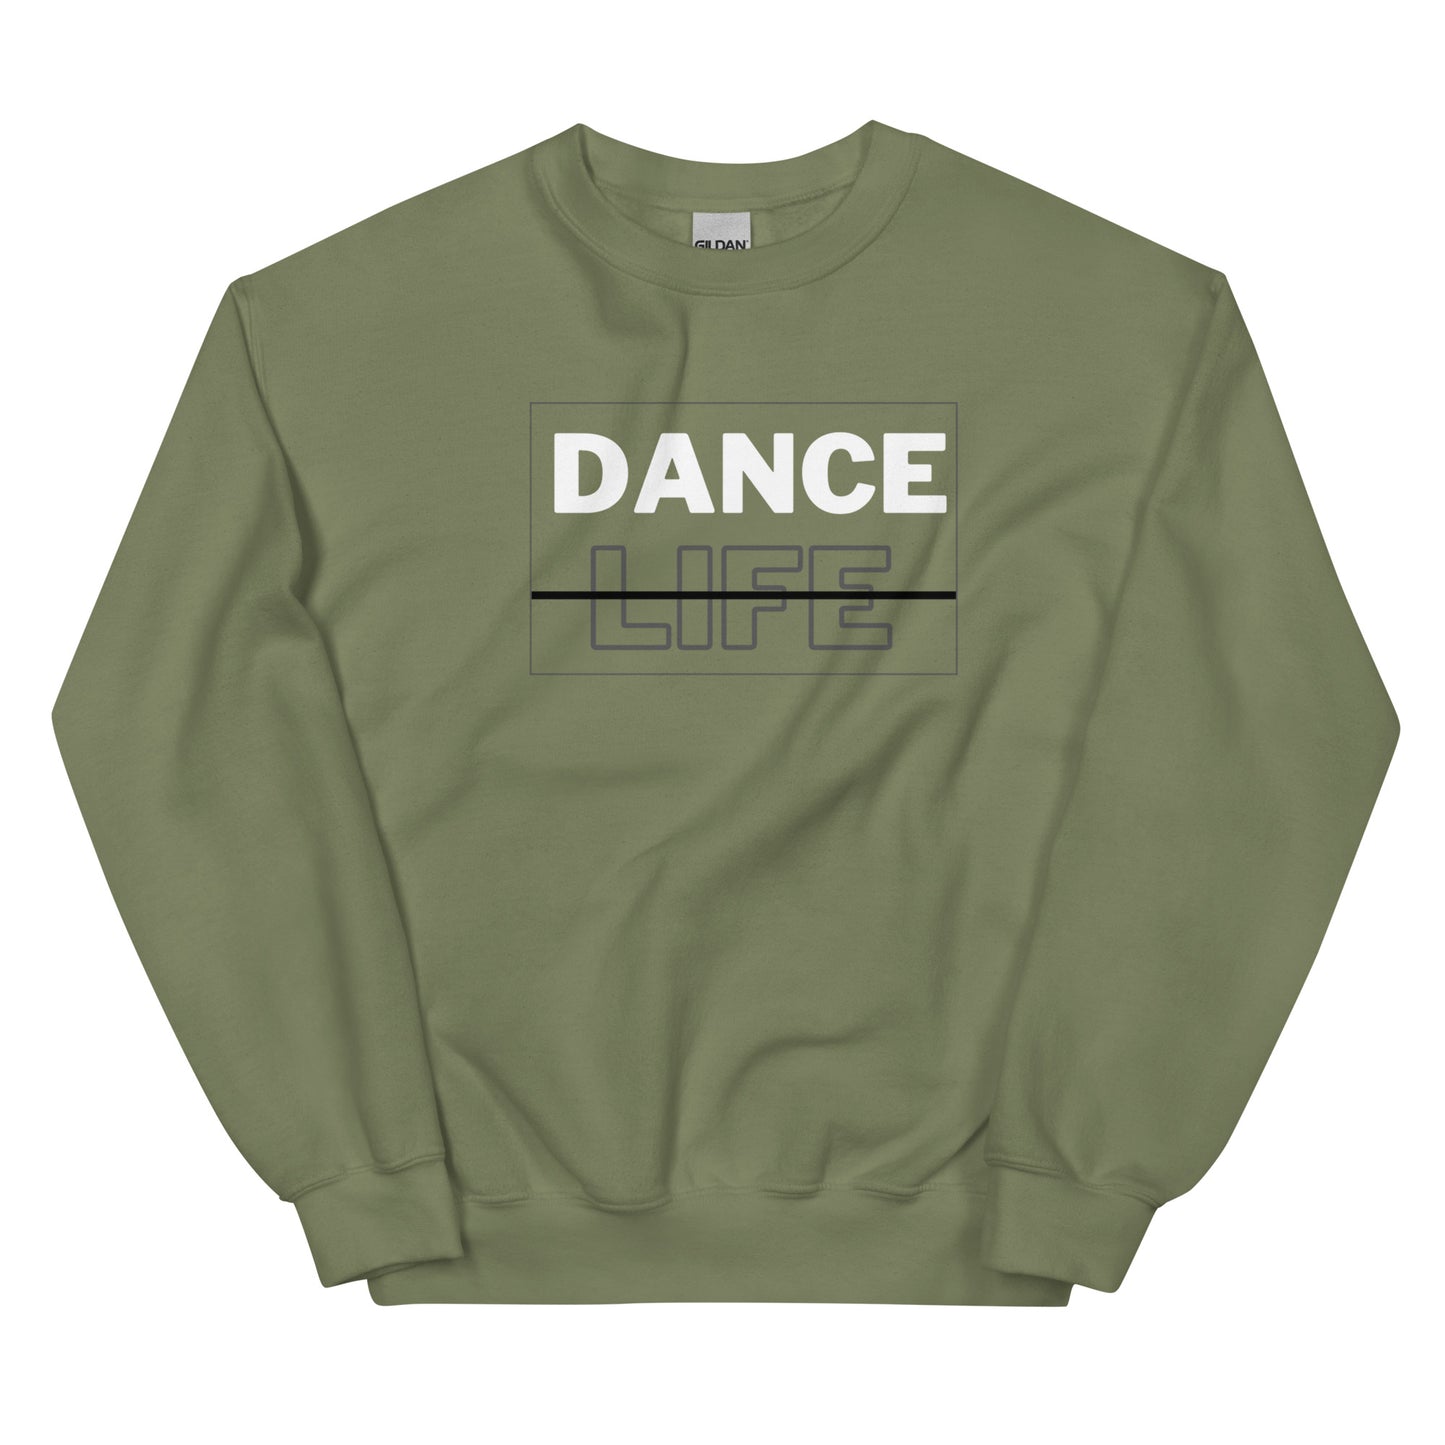 Dance Life Unisex Sweatshirt